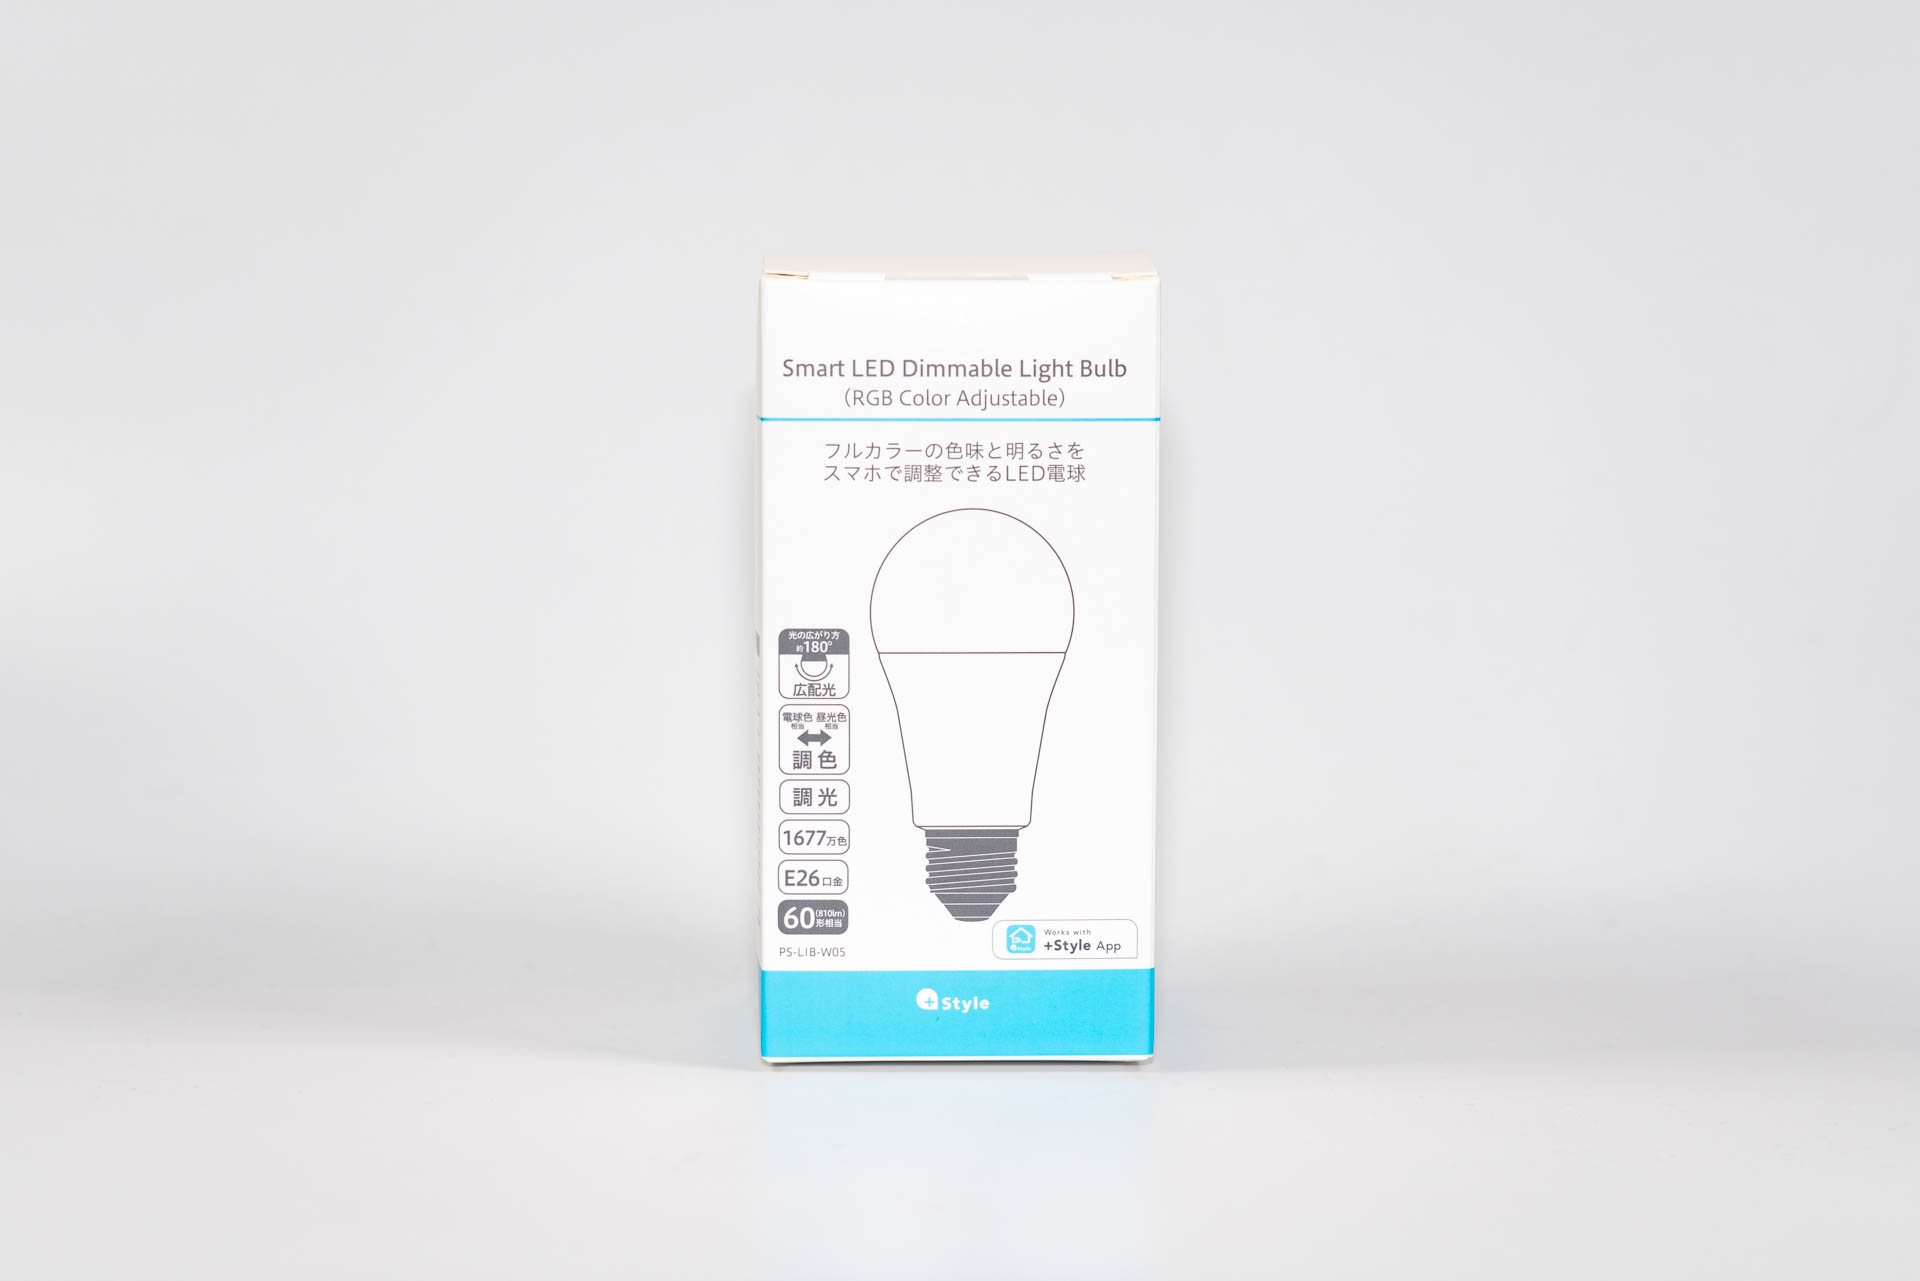 スマートルーム構築計画その1「照明を+StyleのスマートLED電球に交換する」 | クロポンモビ